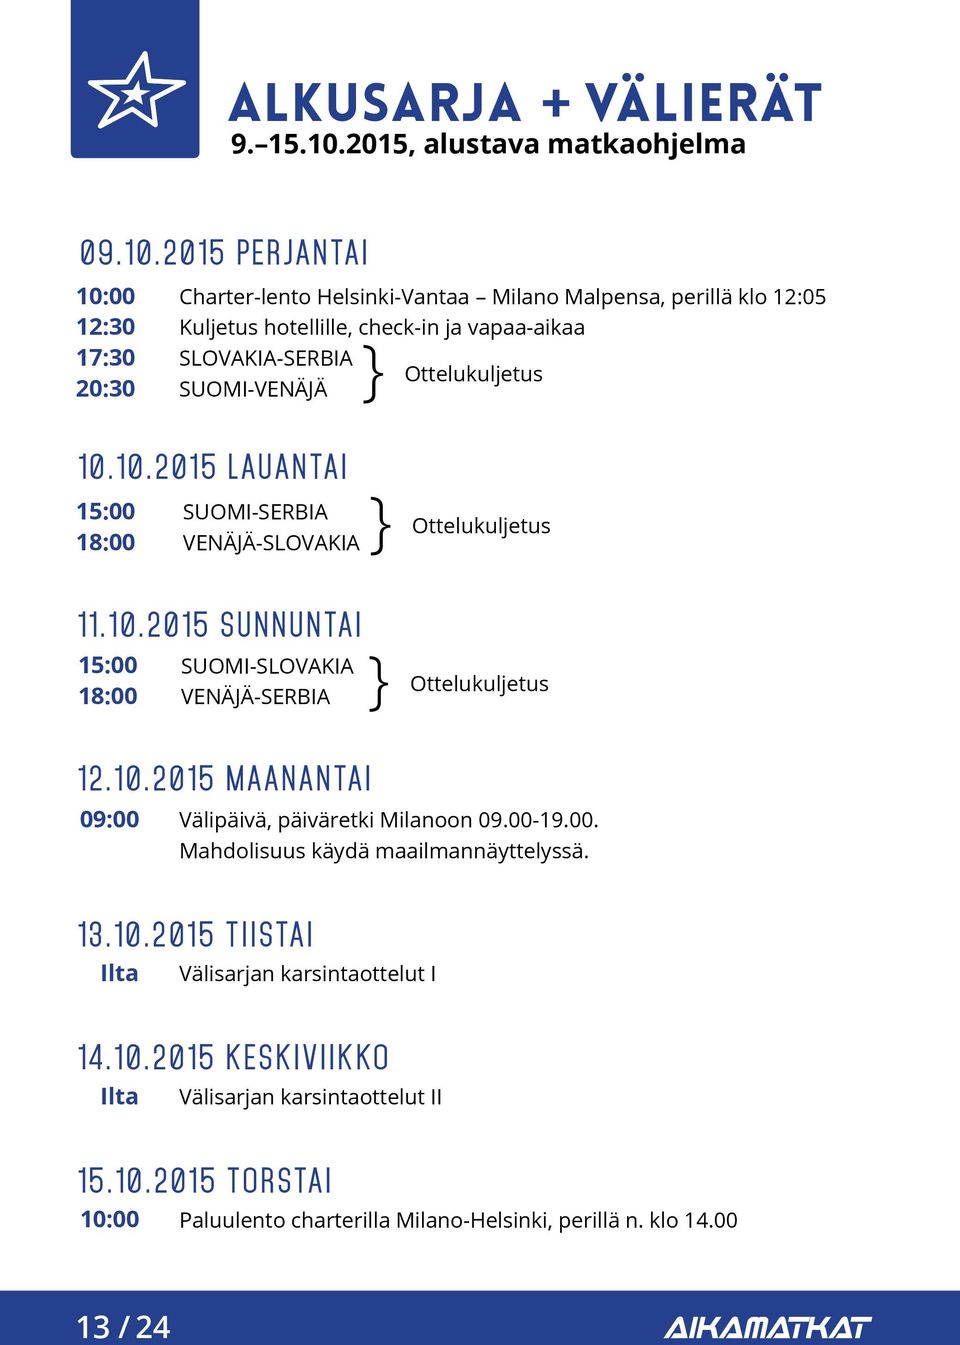 2015 PERJANTAI 10:00 12:30 17:30 20:30 Charter-lento Helsinki-Vantaa Milano Malpensa, perillä klo 12:05 Kuljetus hotellille, check-in ja vapaa-aikaa SLOVAKIA-SERBIA